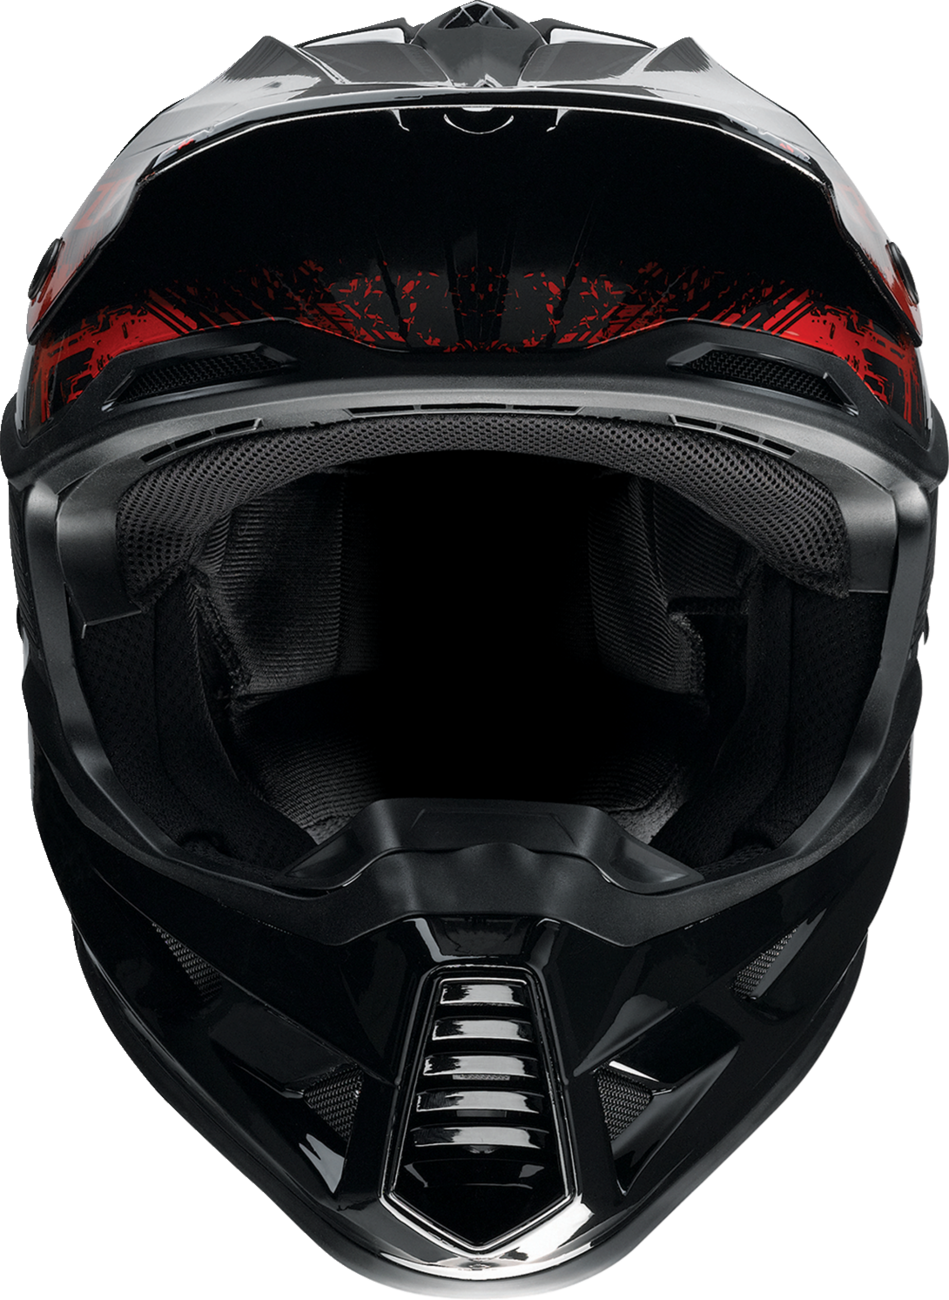 Z1R F.I. Helmet - Fractal - MIPS - Red - Medium 0110-7782